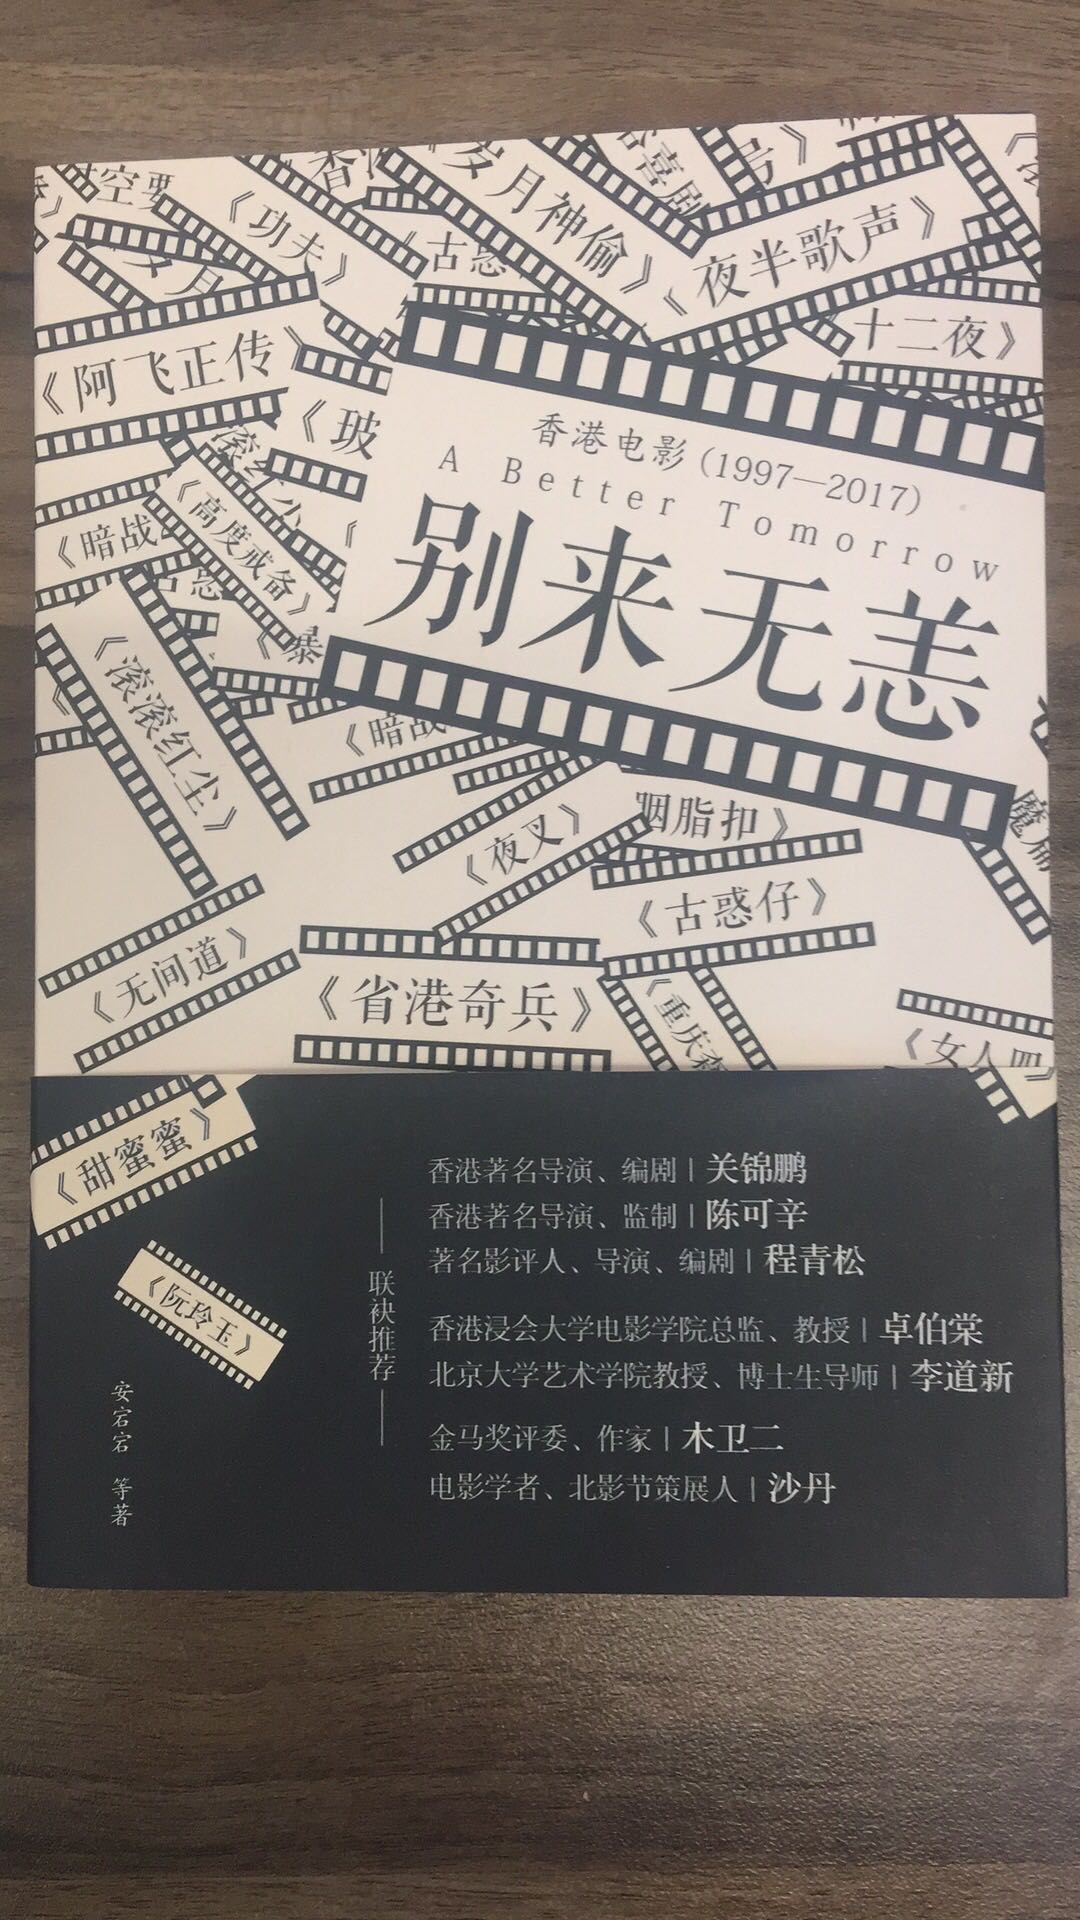 书的内容很赞，应该是一群热爱香港电影的人创作的。